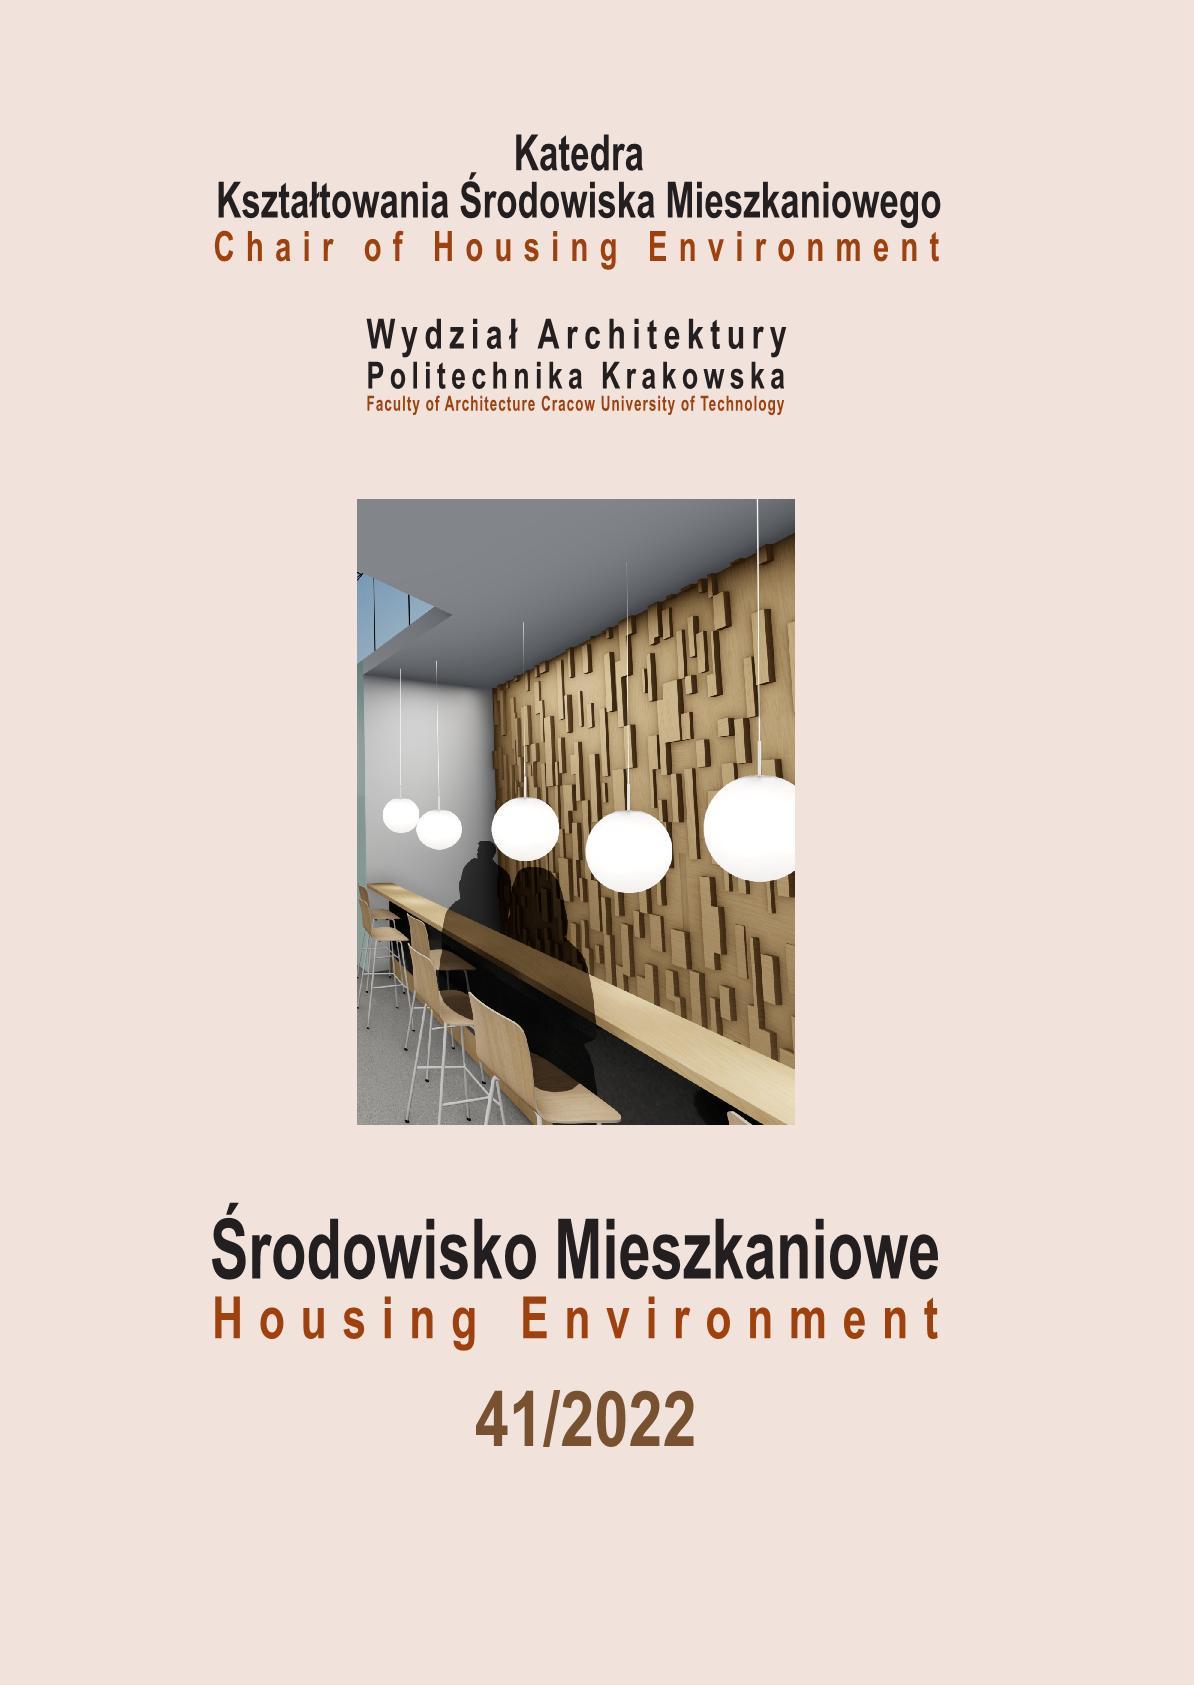 Architektura pomocowa. Wdrożenie projektów Paper Partition System i Styrofoam Housing System w kontekście wojny w Ukrainie.